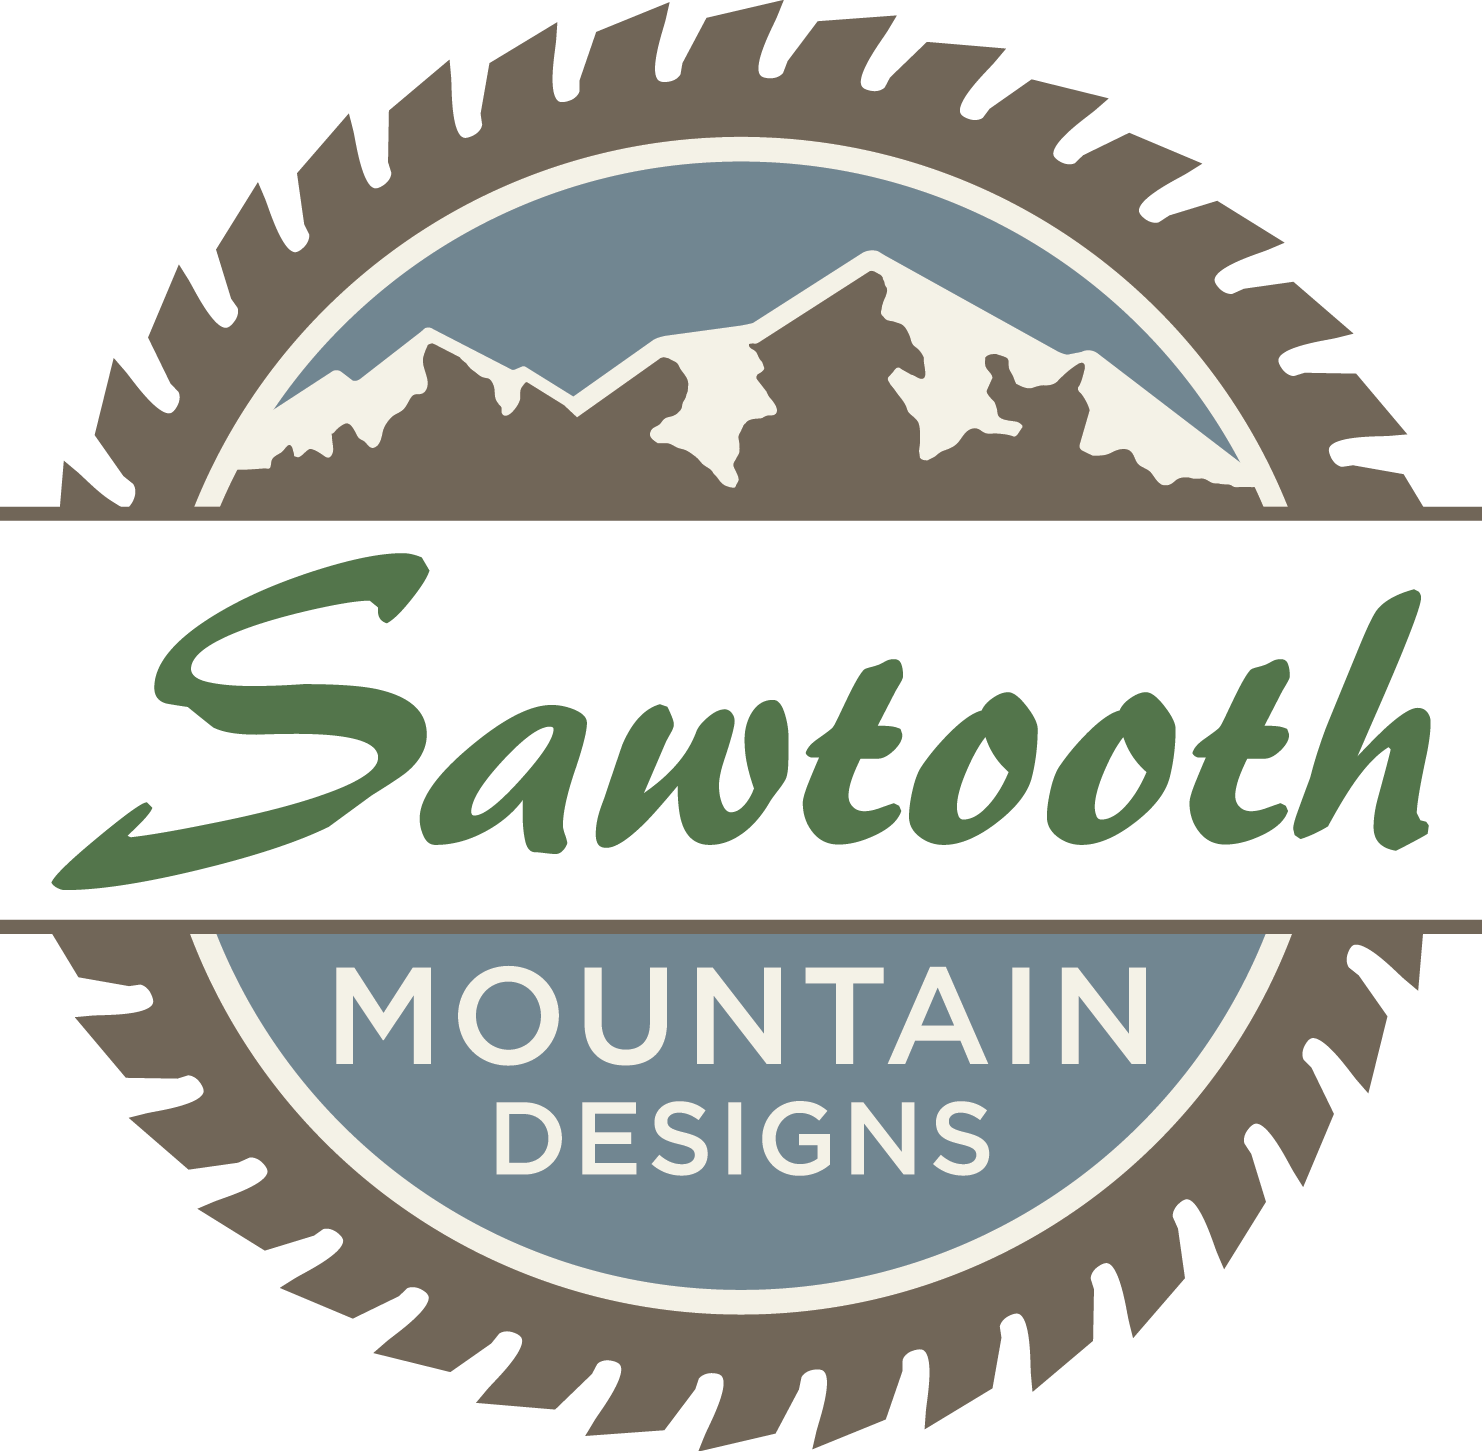 Sawtooth Mountain Designs